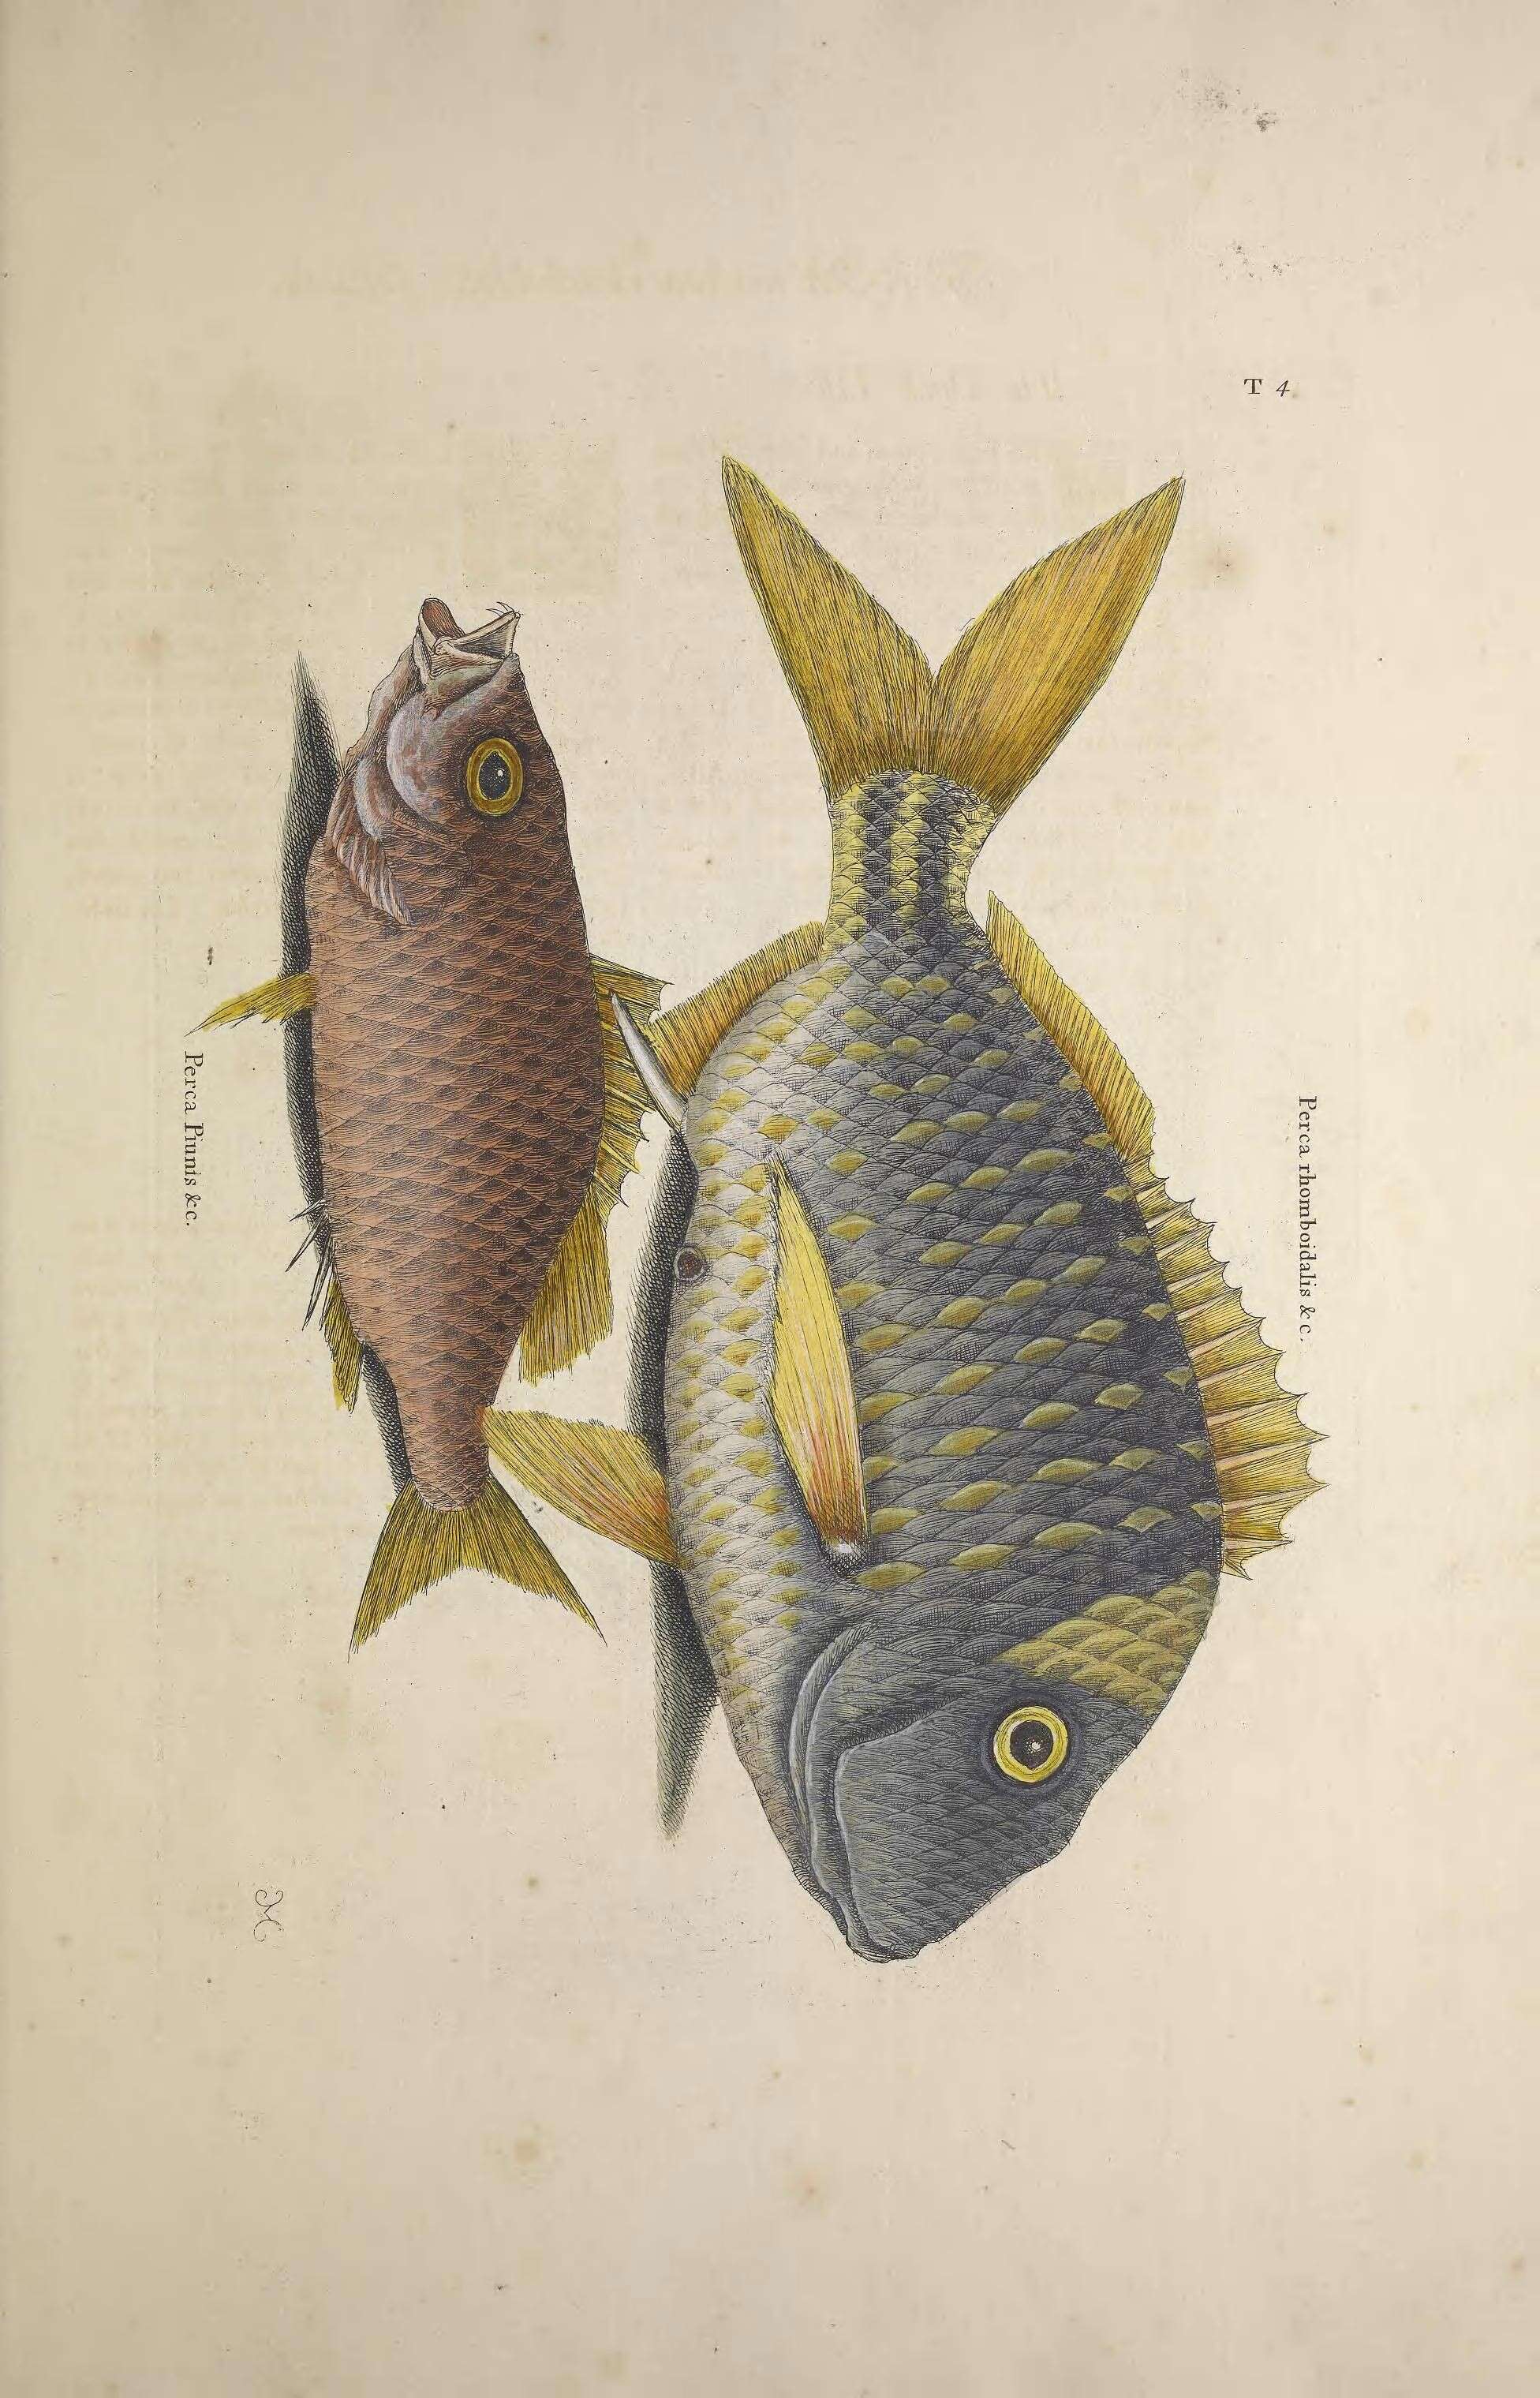 Image of Porkfish